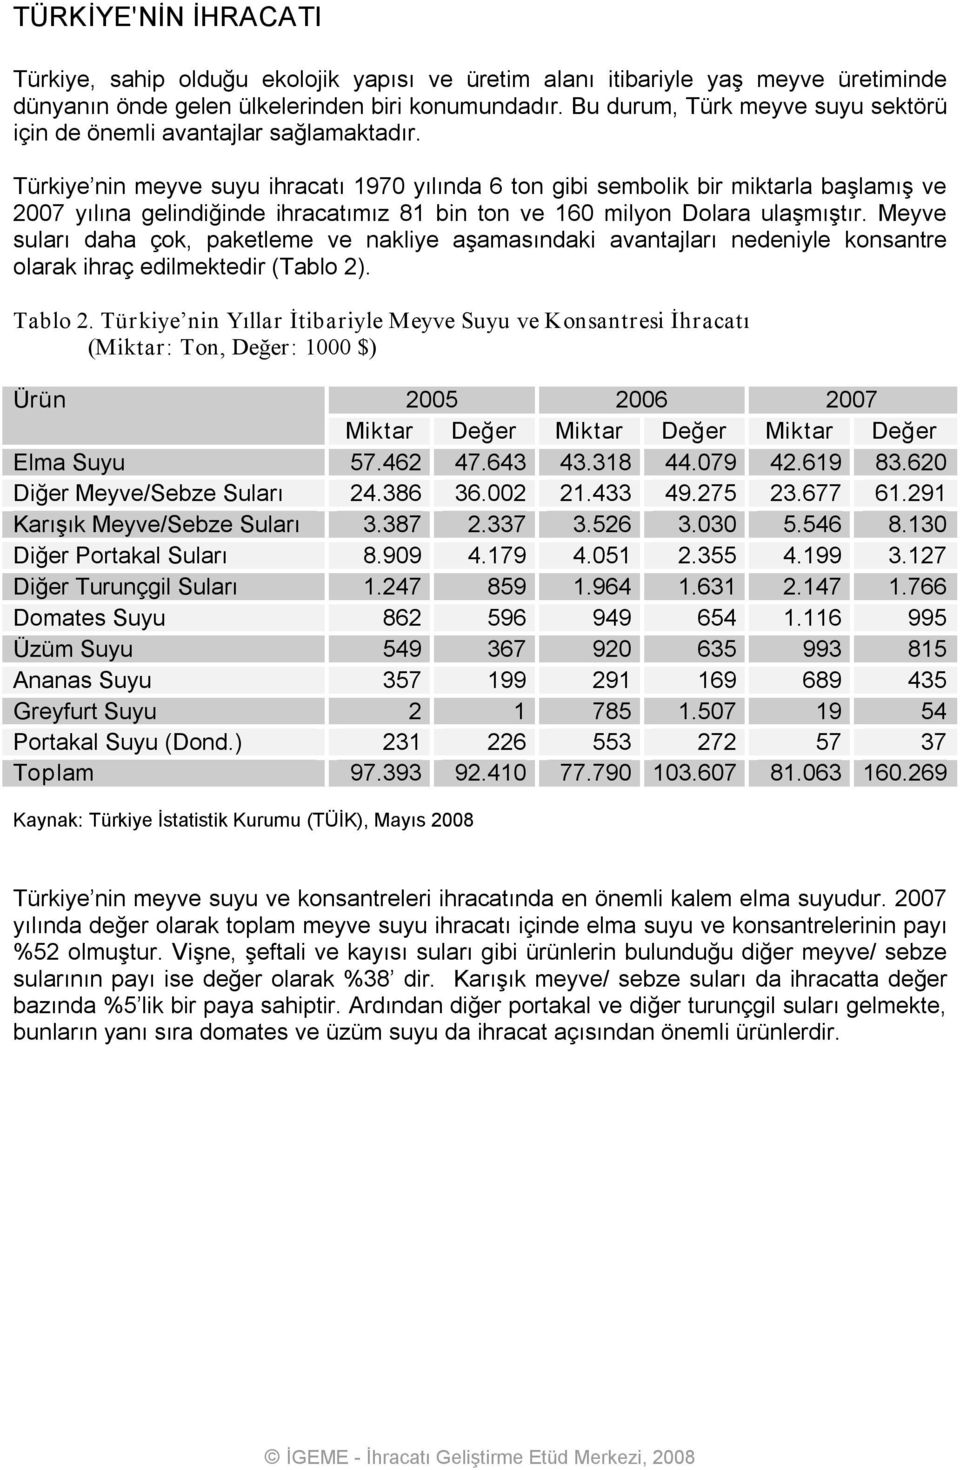 Türkiye nin meyve suyu ihracatı 1970 yılında 6 ton gibi sembolik bir miktarla başlamış ve 2007 yılına gelindiğinde ihracatımız 81 bin ton ve 160 milyon Dolara ulaşmıştır.